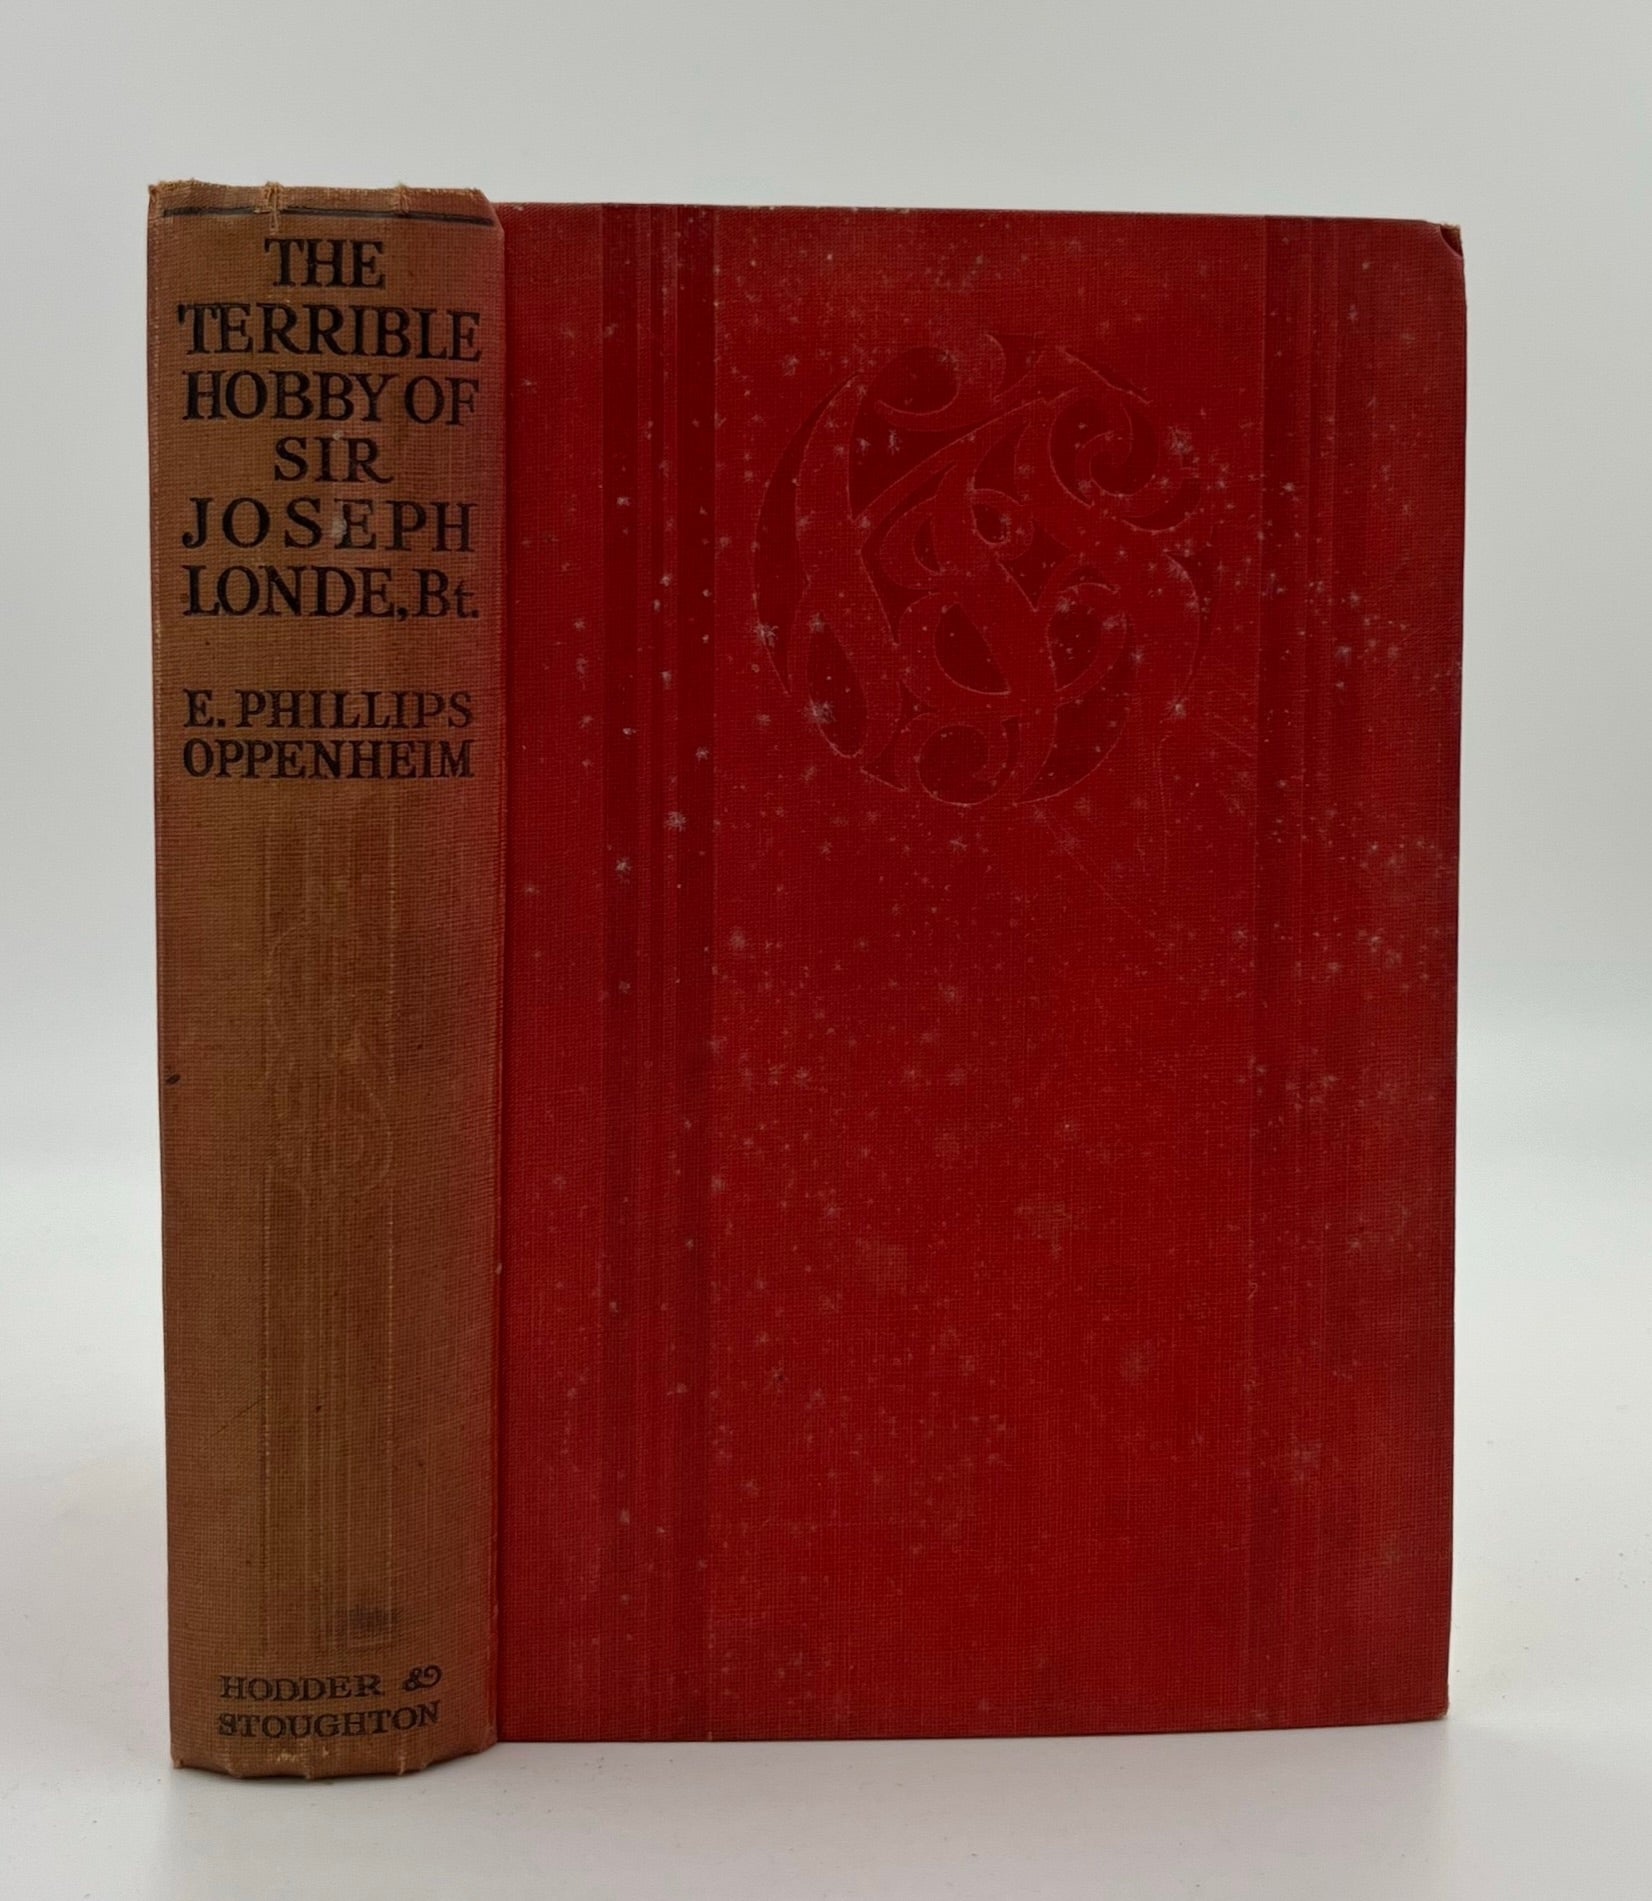 Book #160482 The Terrible Hobby of Sir Joseph Londe, Bart. E. Phillips Oppenheim.